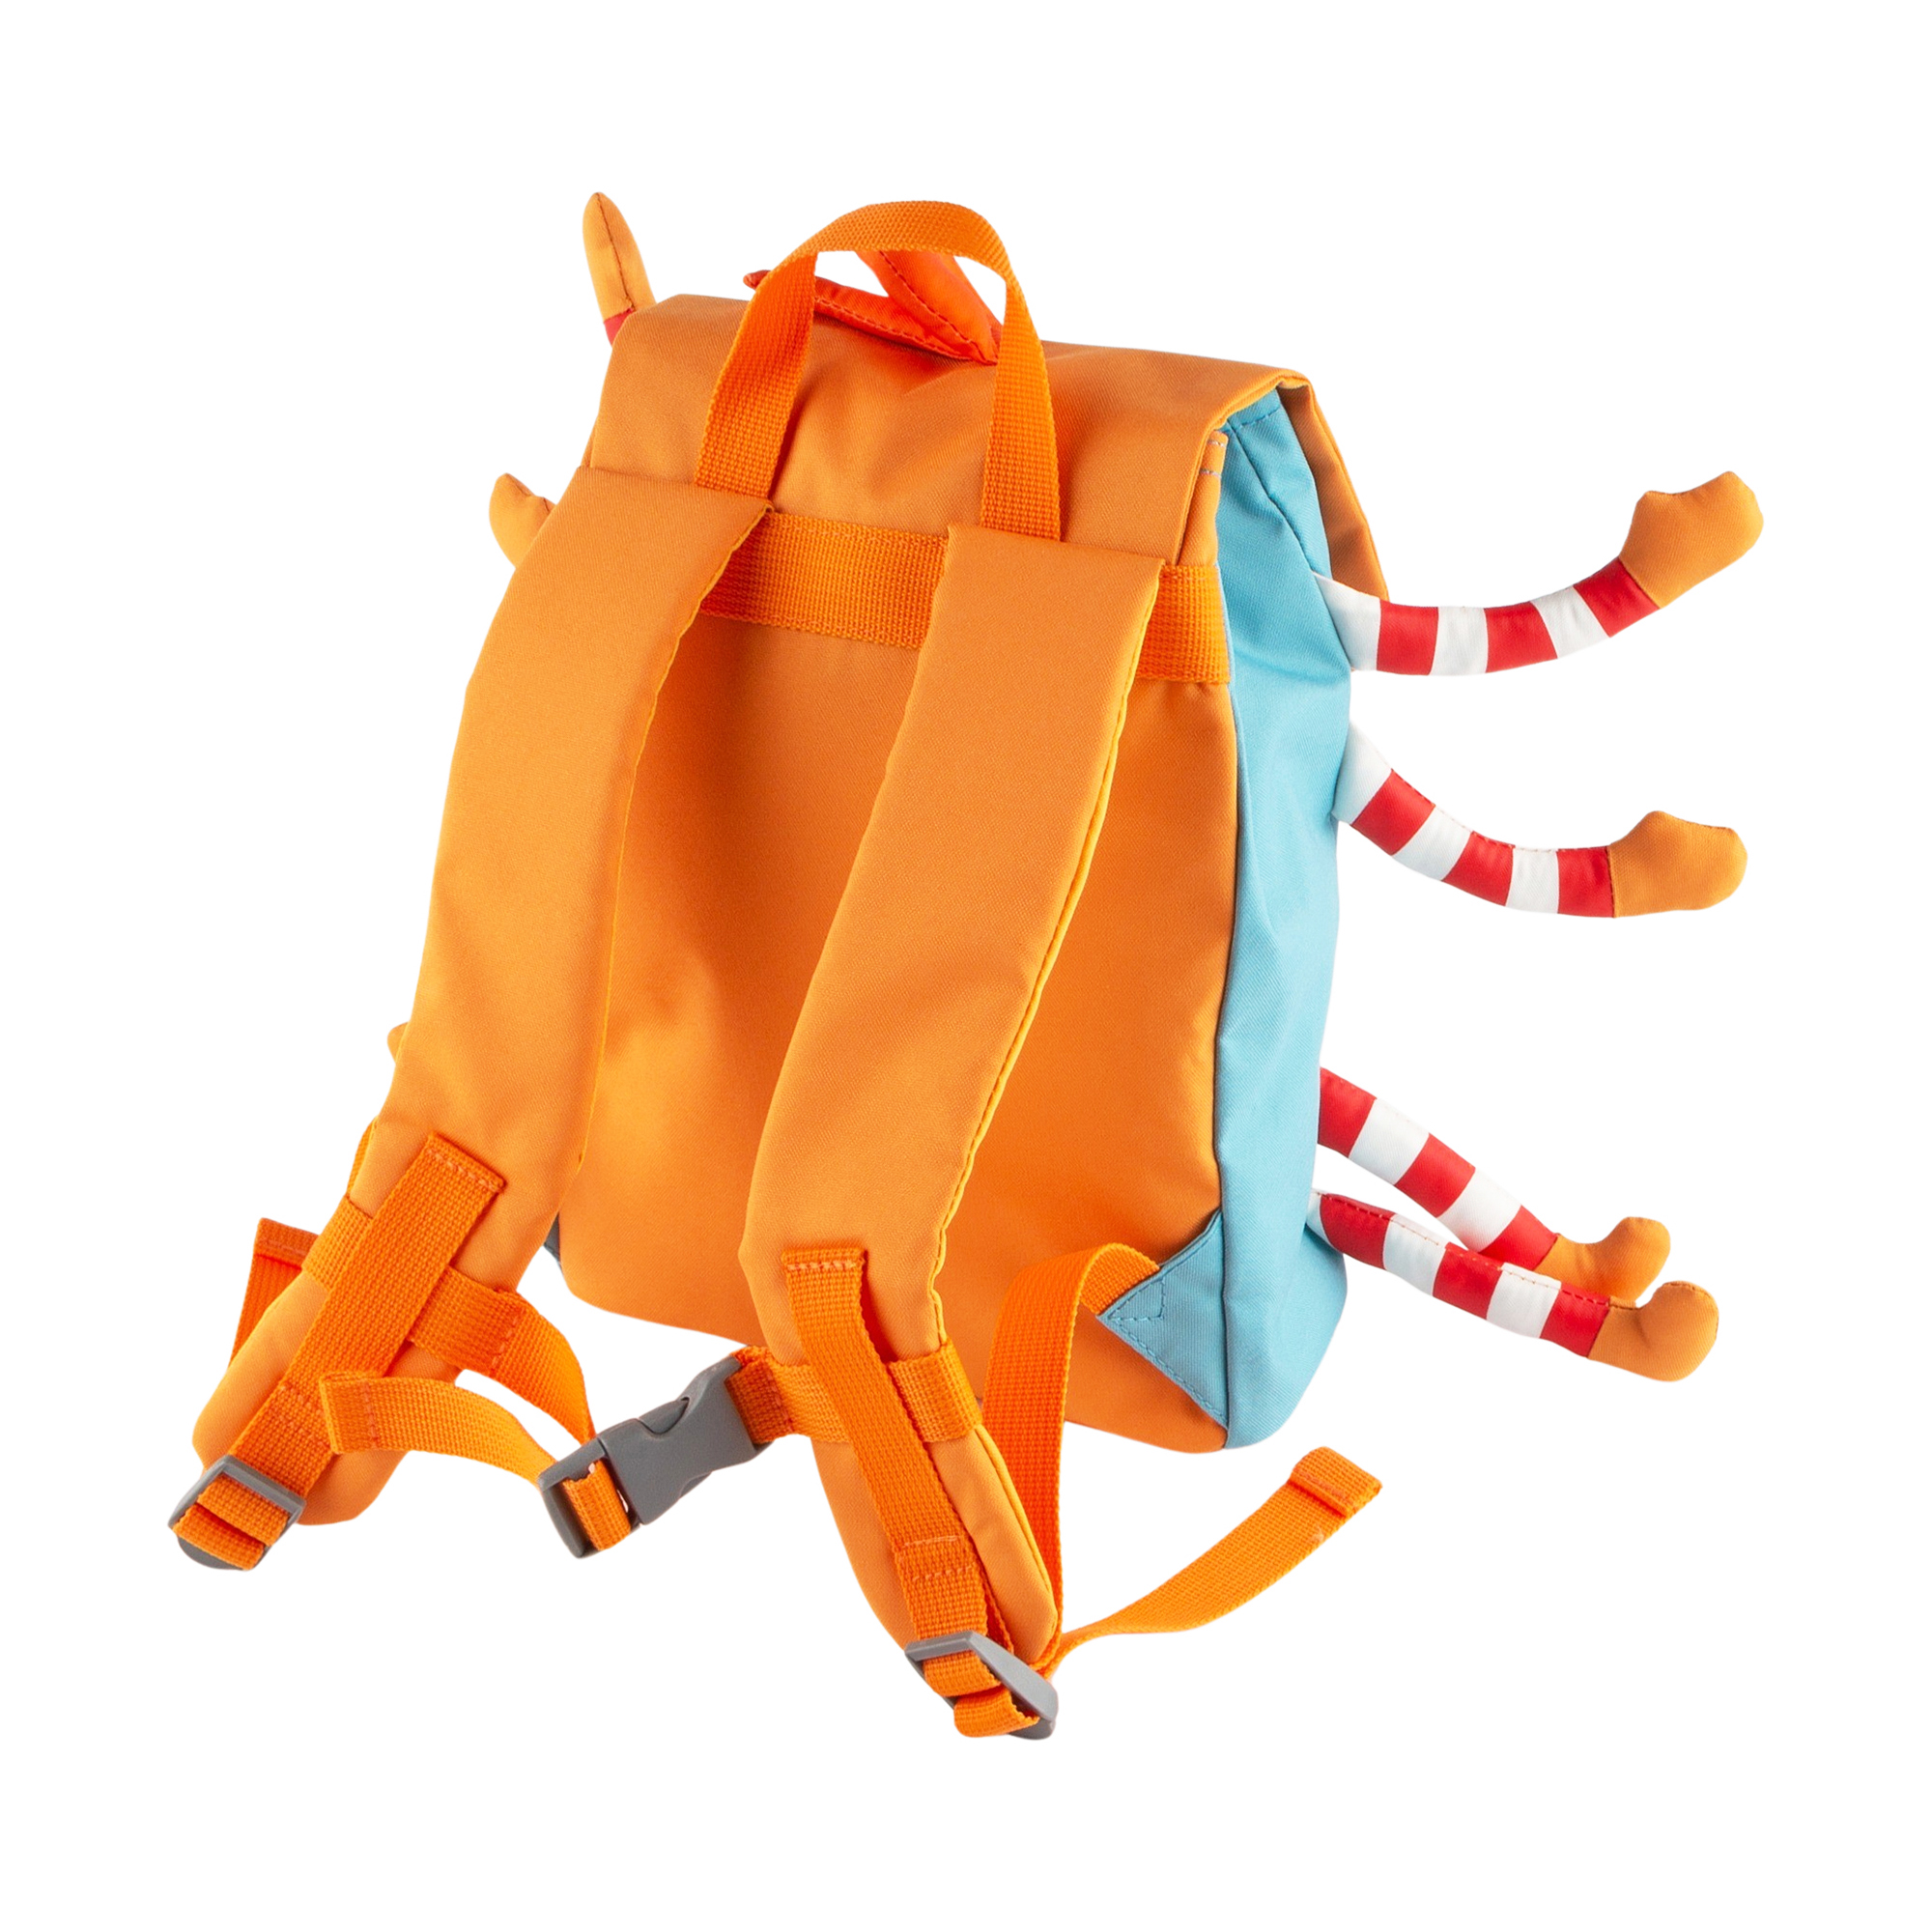 Children's backpack spider, children's book "Die kleine Spinne Widerlich"